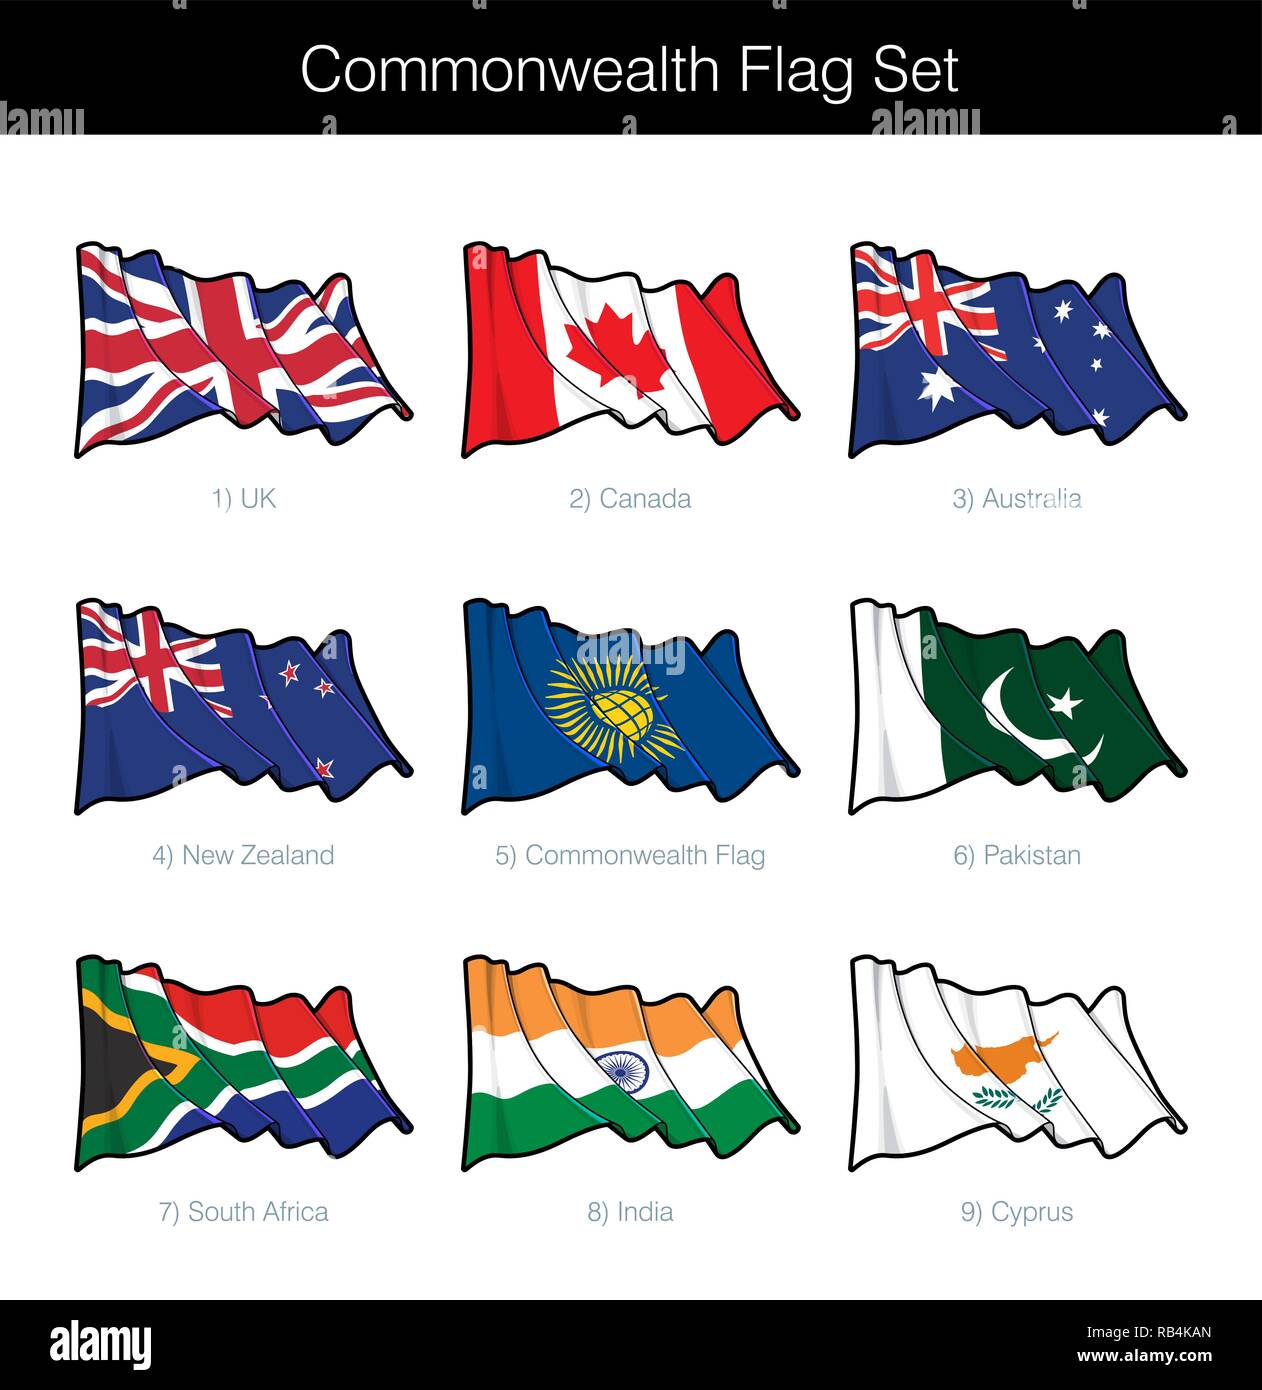 Commonwealth Wehende Flagge Gesetzt Das Set Beinhaltet Die Flaggen Von Grossbritannien Kanada Australien Neuseeland Pakistan Indien Sudafrika Zypern Und Die Commonwe Stock Vektorgrafik Alamy